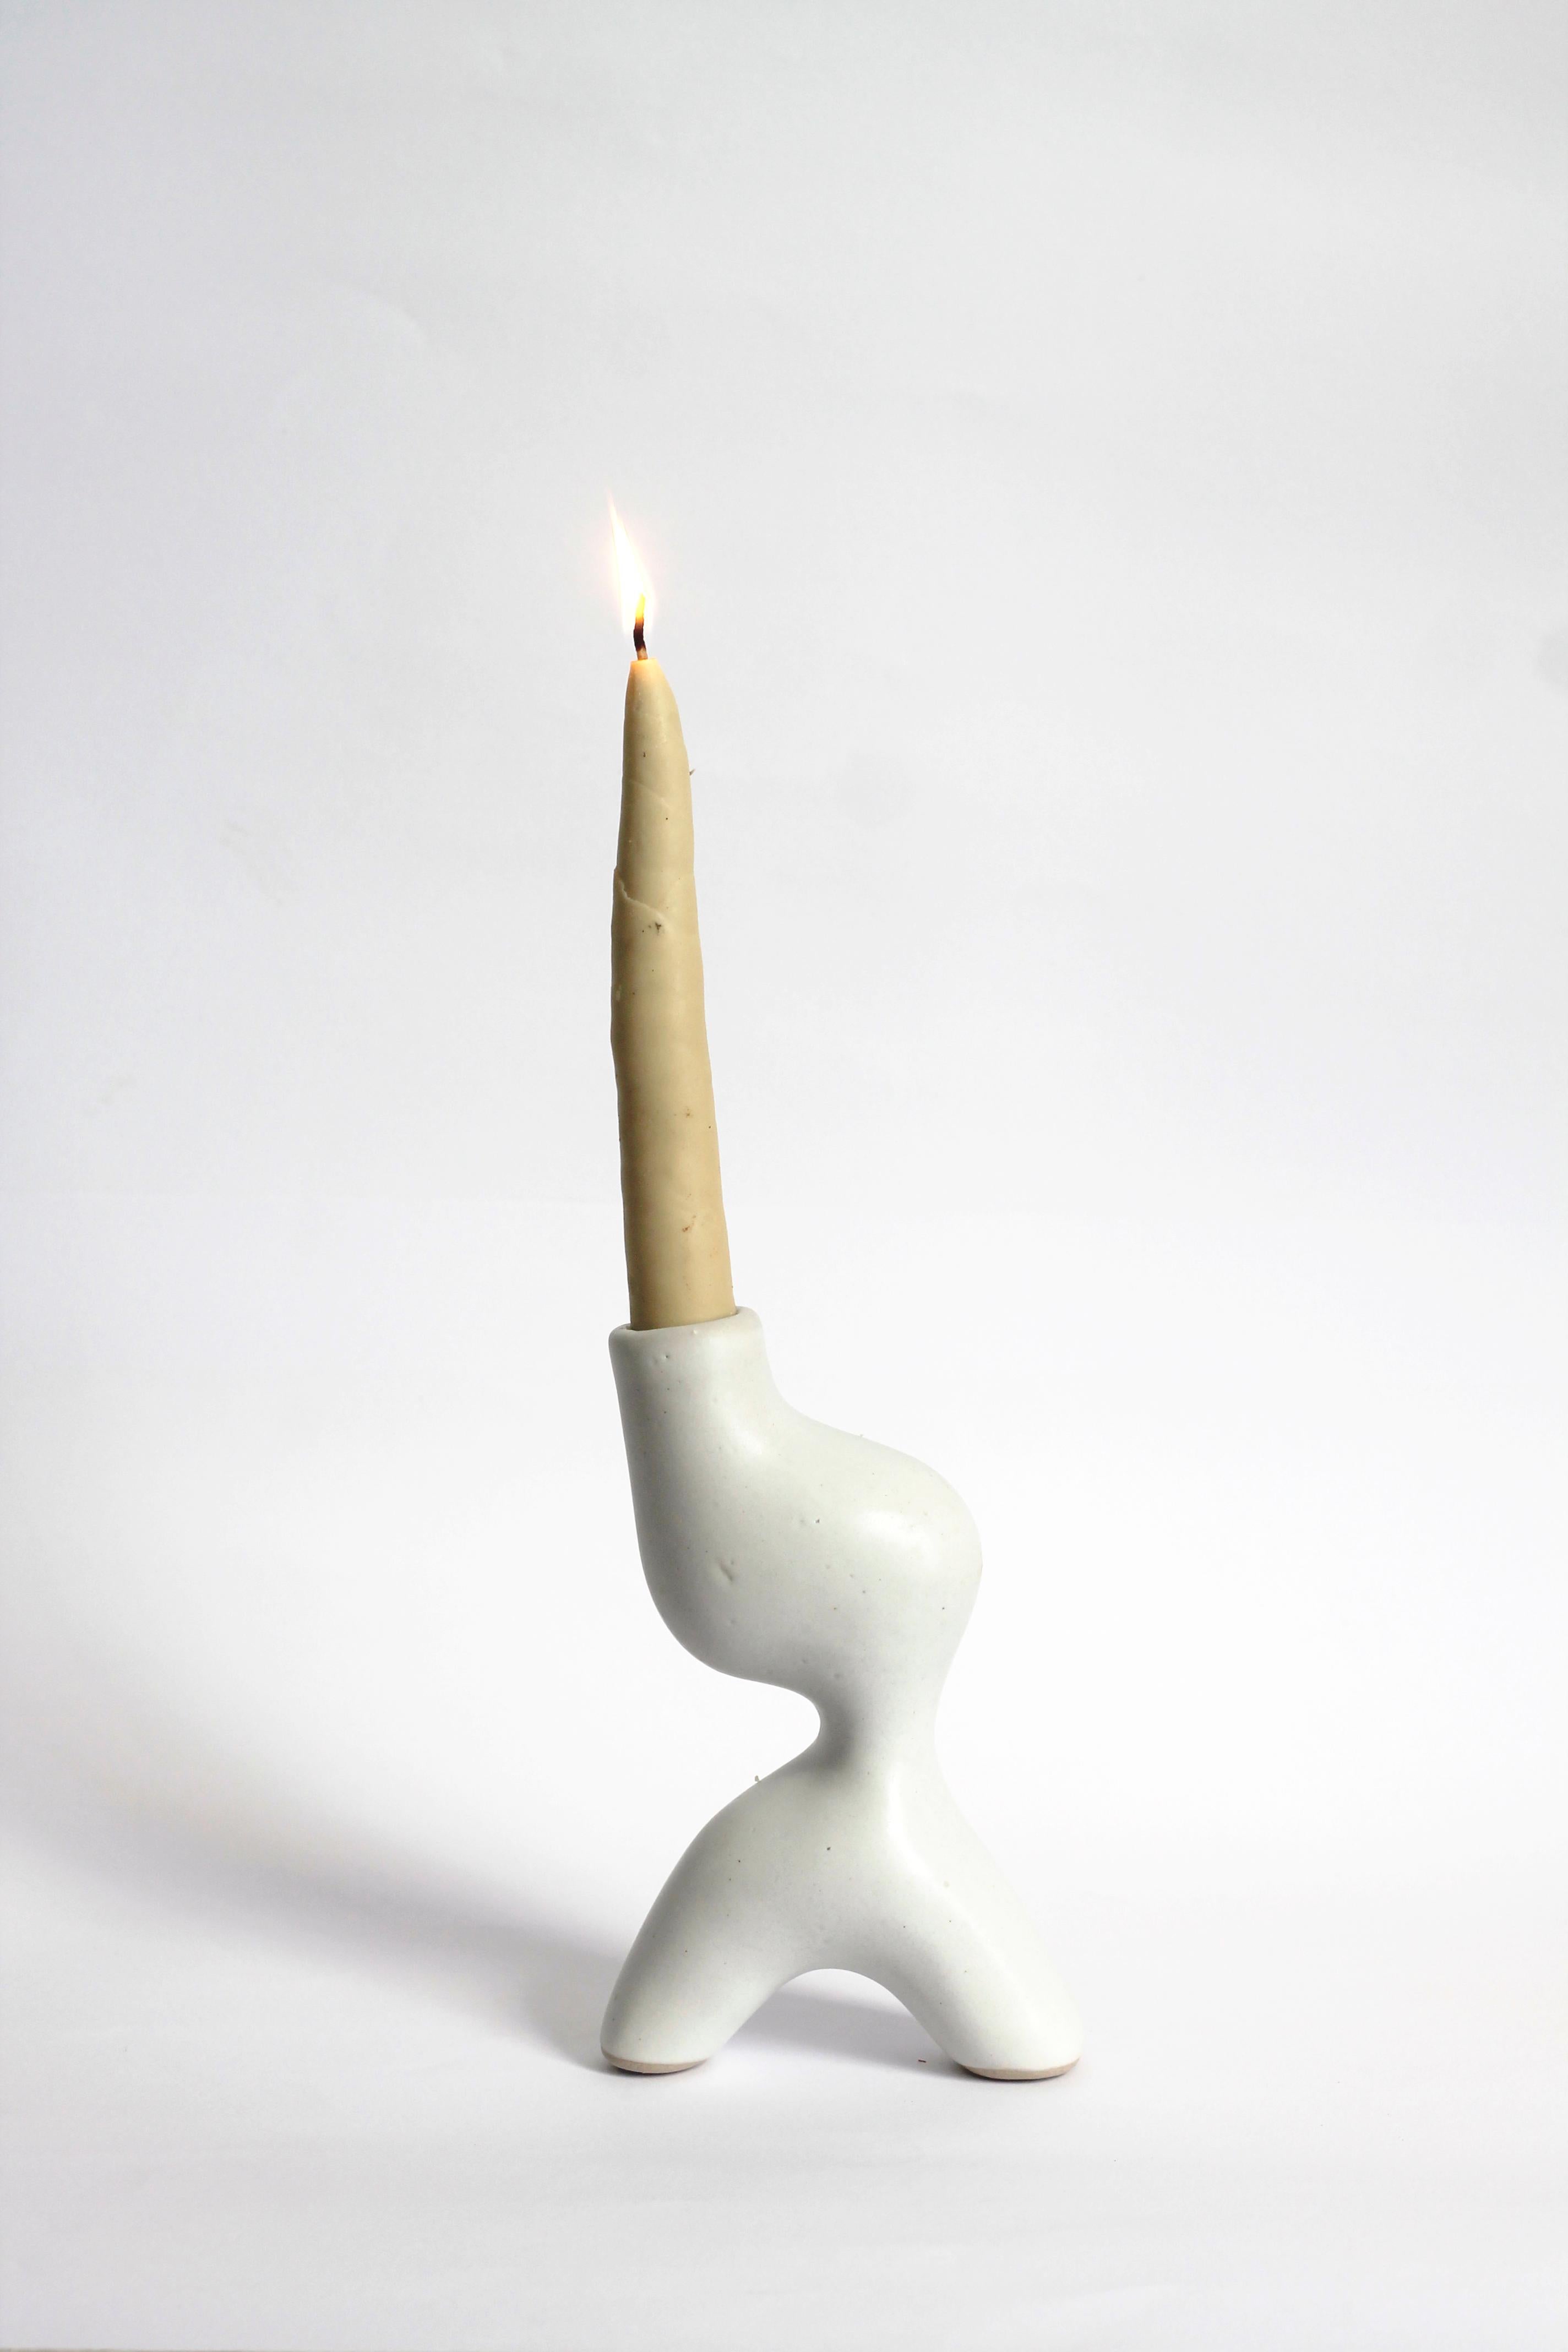 Kerzenständer Candelabro von Camila Apaez.
Einzigartig
MATERIALIEN: Steingut.
Abmessungen: 11 x 7 x 16 H cm.

Ila Ceramica ist aus einem Prozess der inneren Suche entstanden, in dem die Keramik zu einem Raum für Präsenz, Stille, Berührung und Geduld